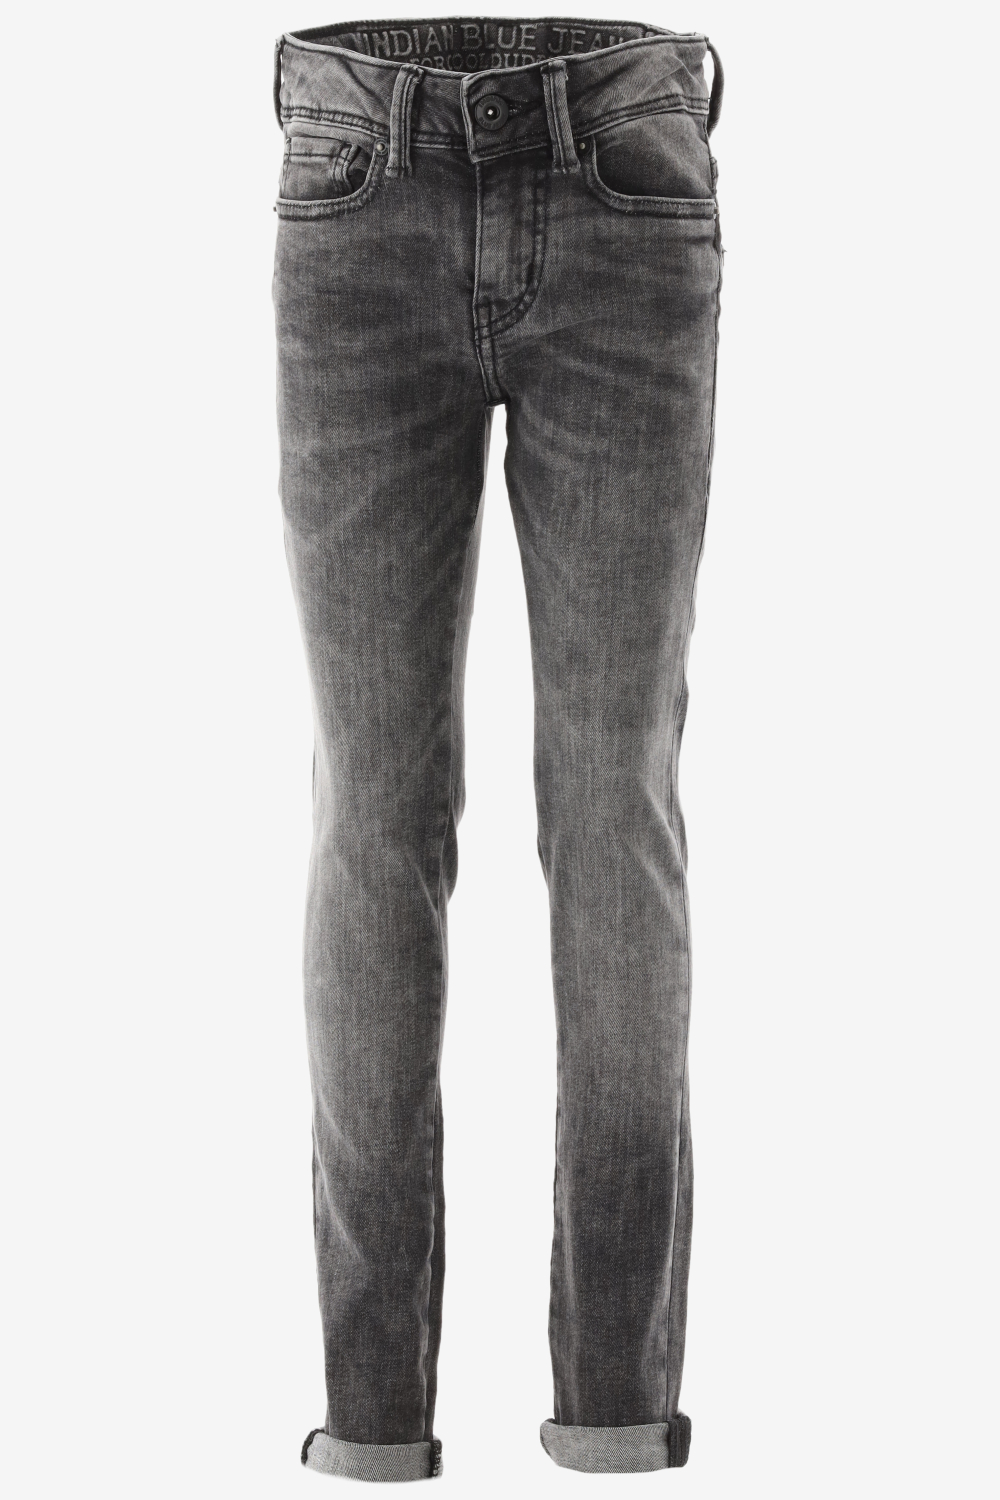 Indian Blue Jeans Grey Max Straight Fit Jeans Jongens - Broek - Grijs - Maat 134